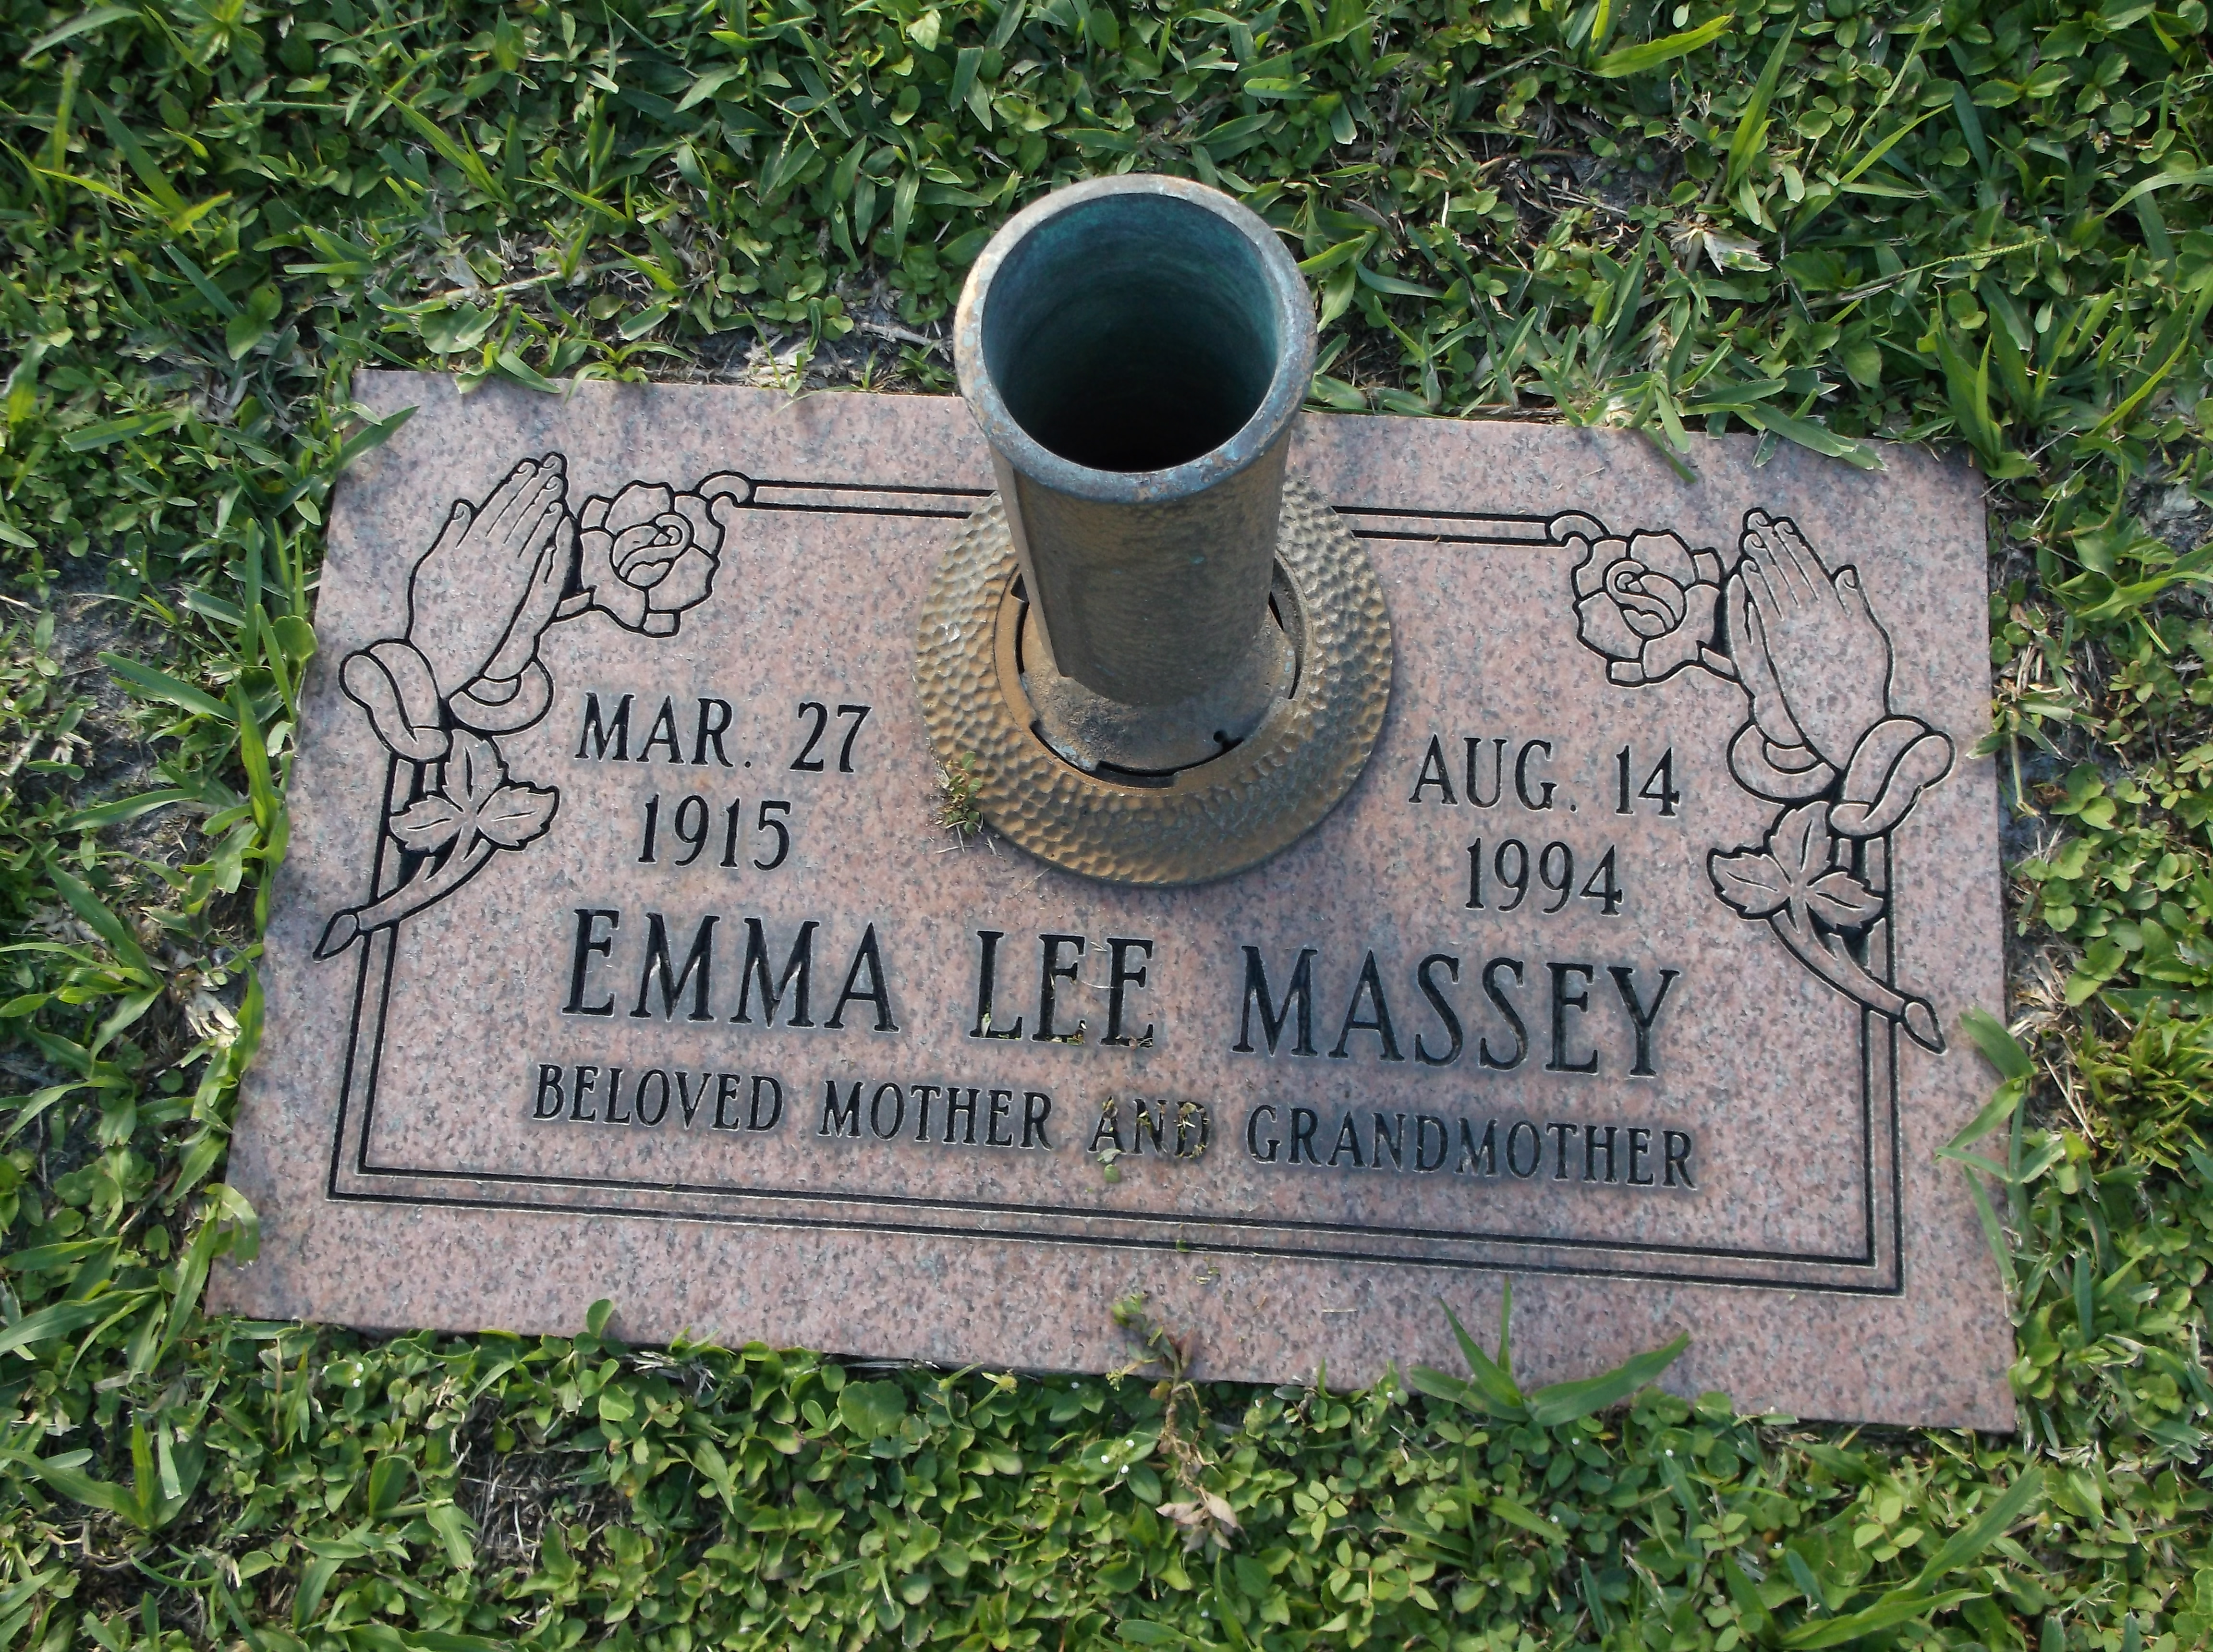 Emma Lee Massey